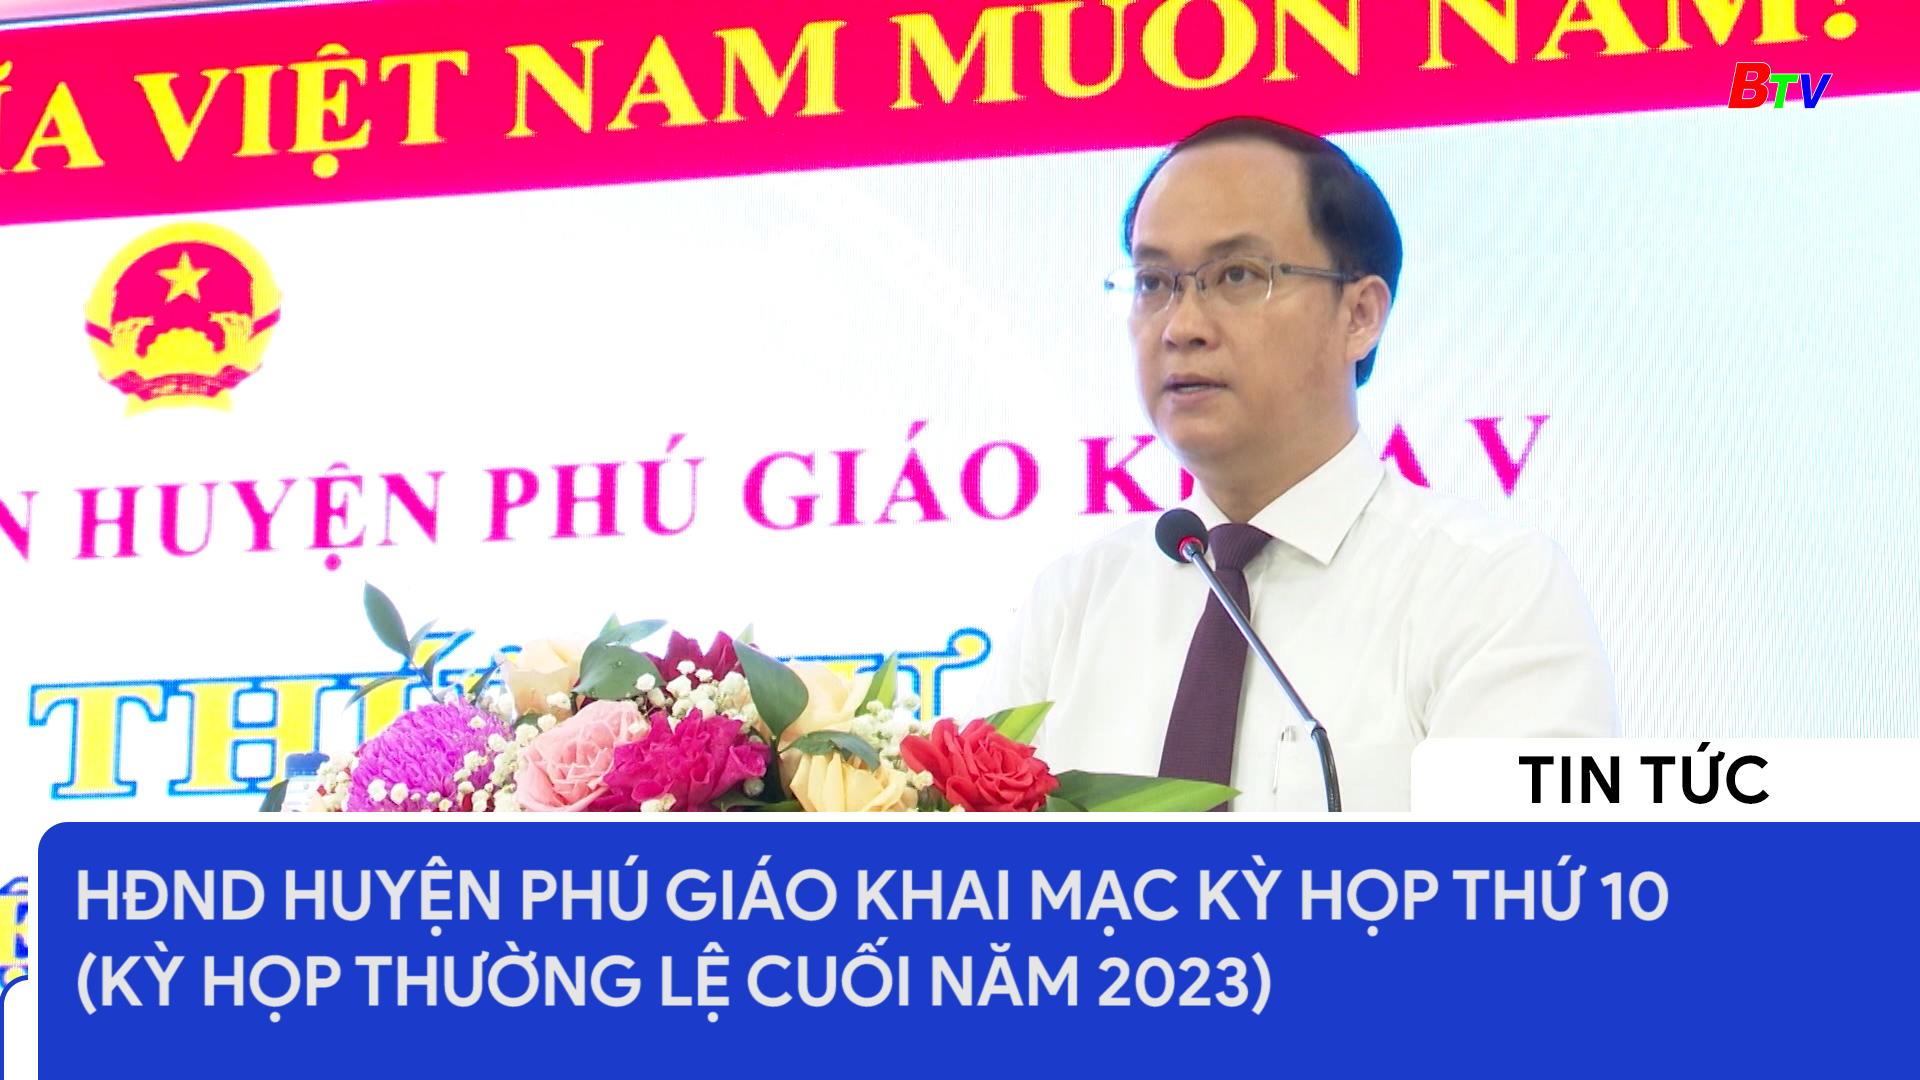 HĐND huyện Phú Giáo khai mạc Kỳ họp thứ 10 (Kỳ họp thường lệ cuối năm 2023)